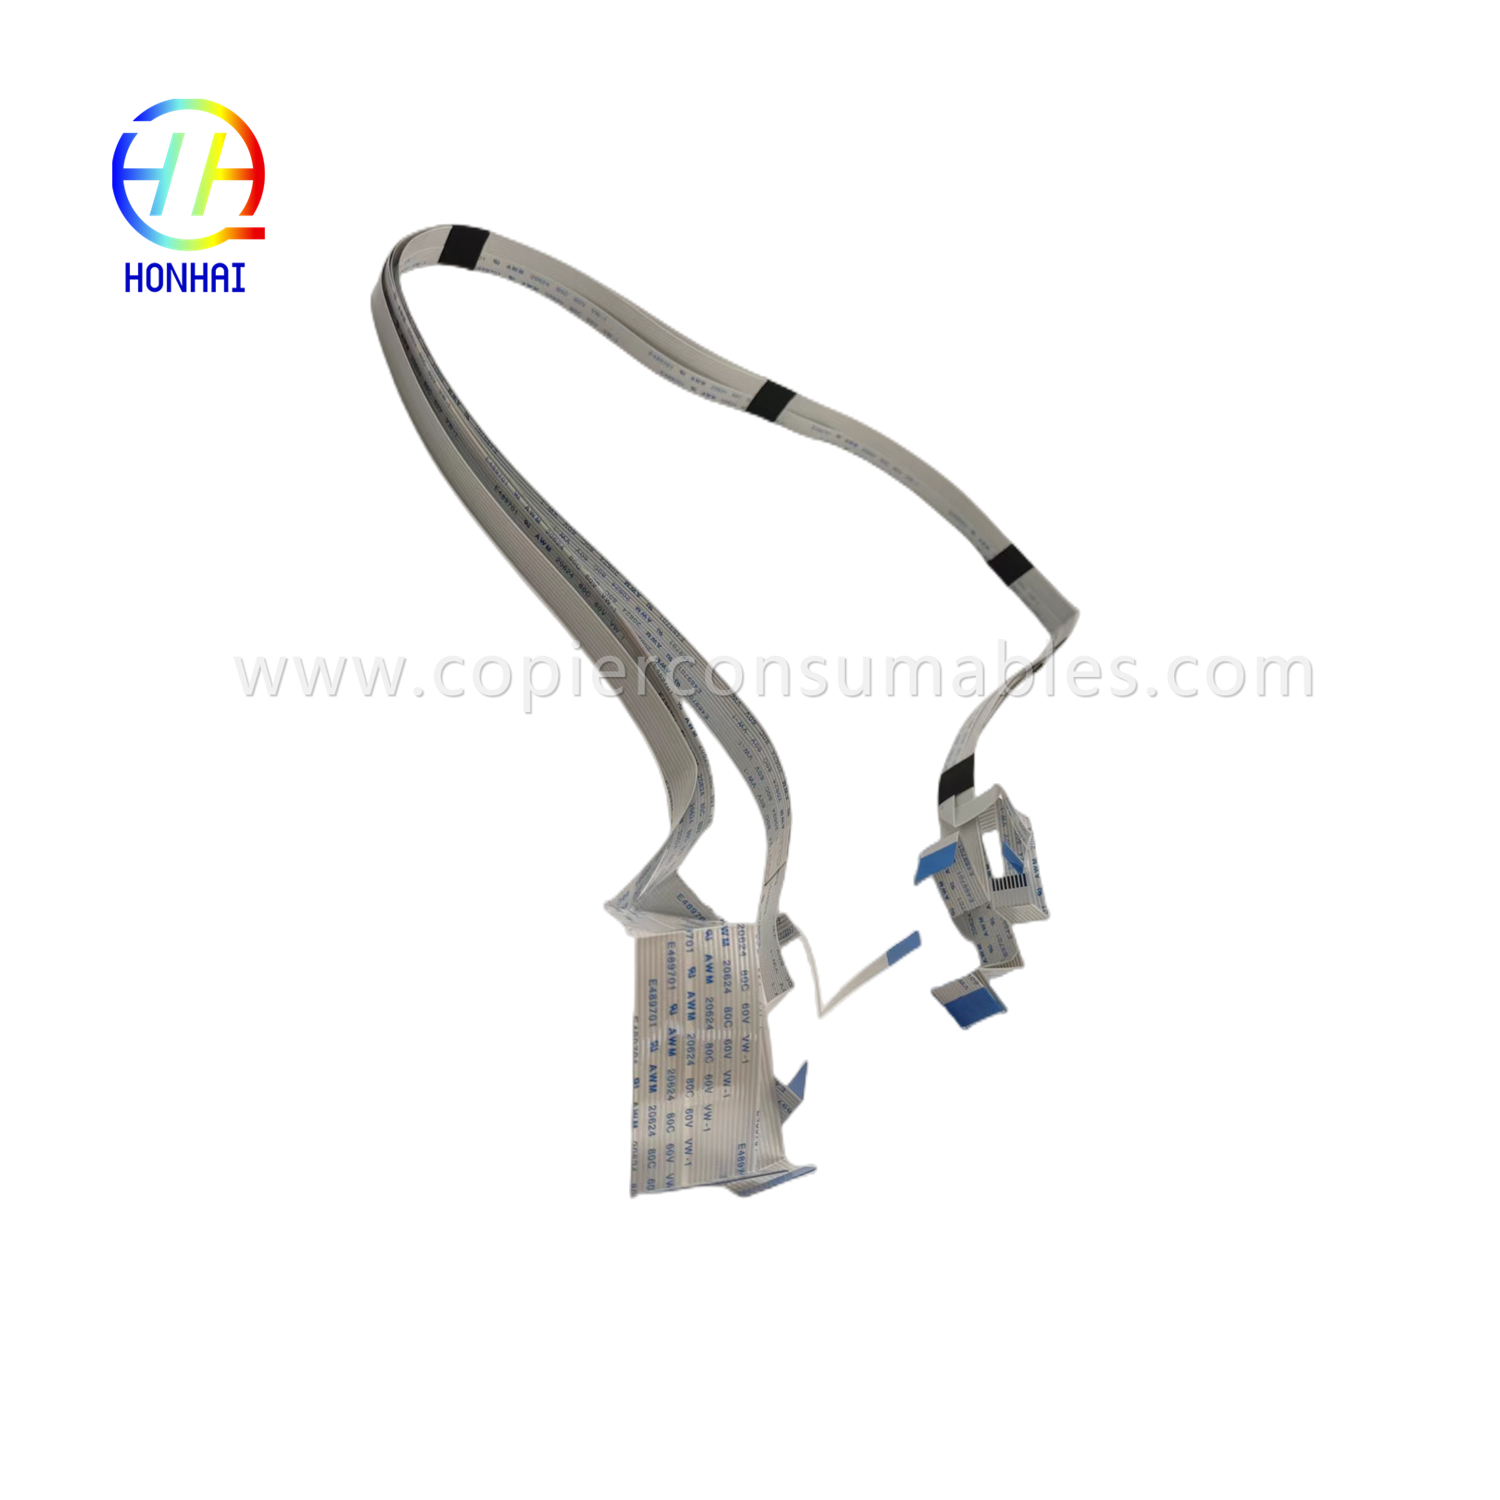 Print Head Cable for Epson L800 L805  L810 L850 Printer  (2)